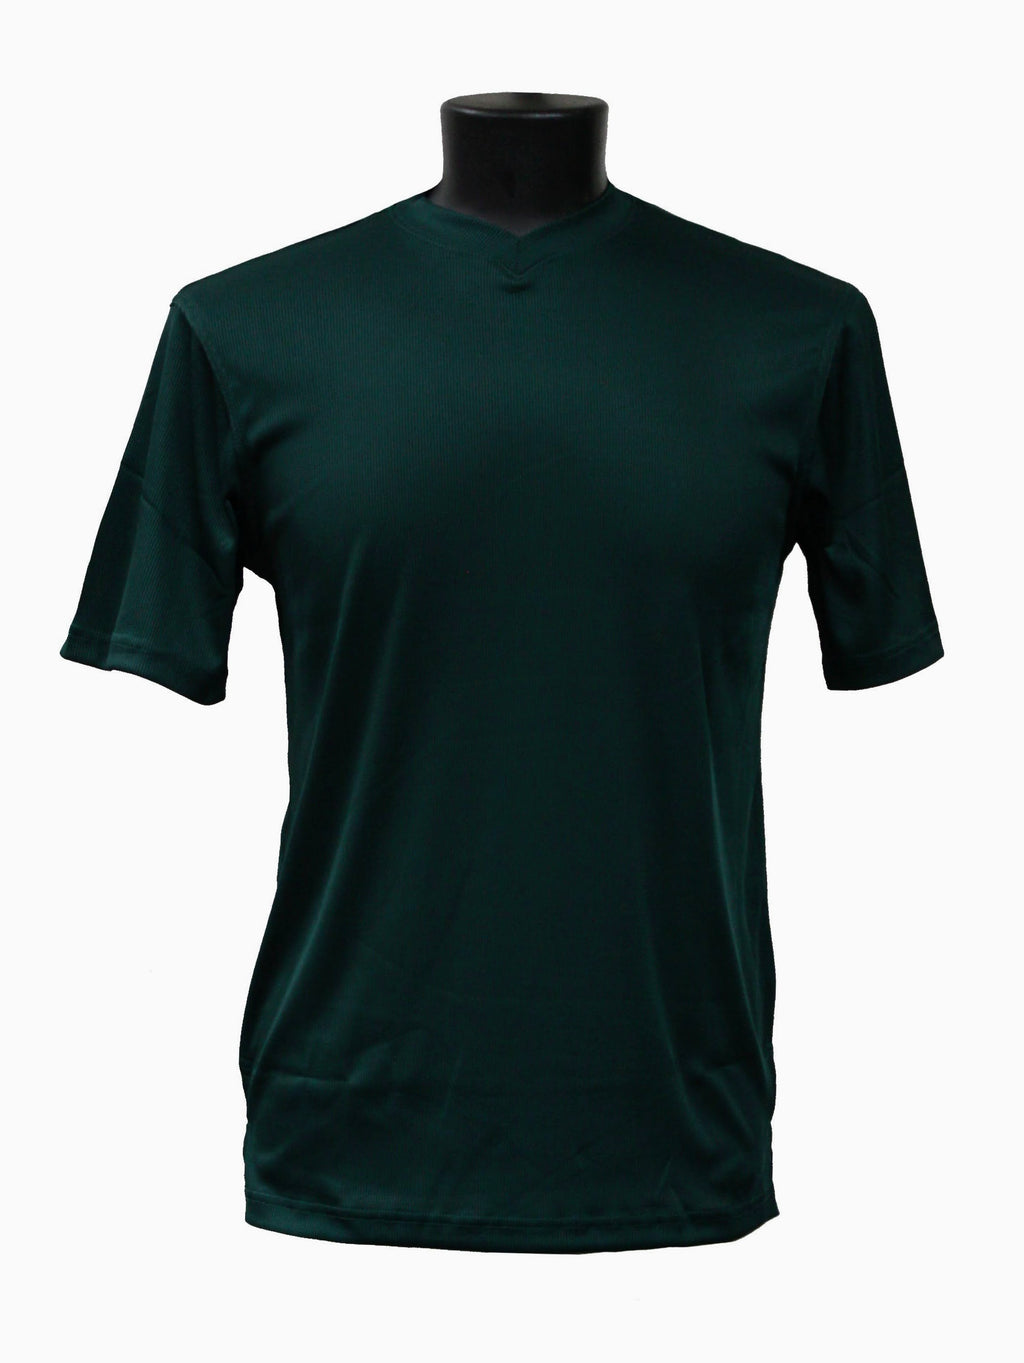 Bassiri S/S V-Neck Emerald Green T-Shirt 219